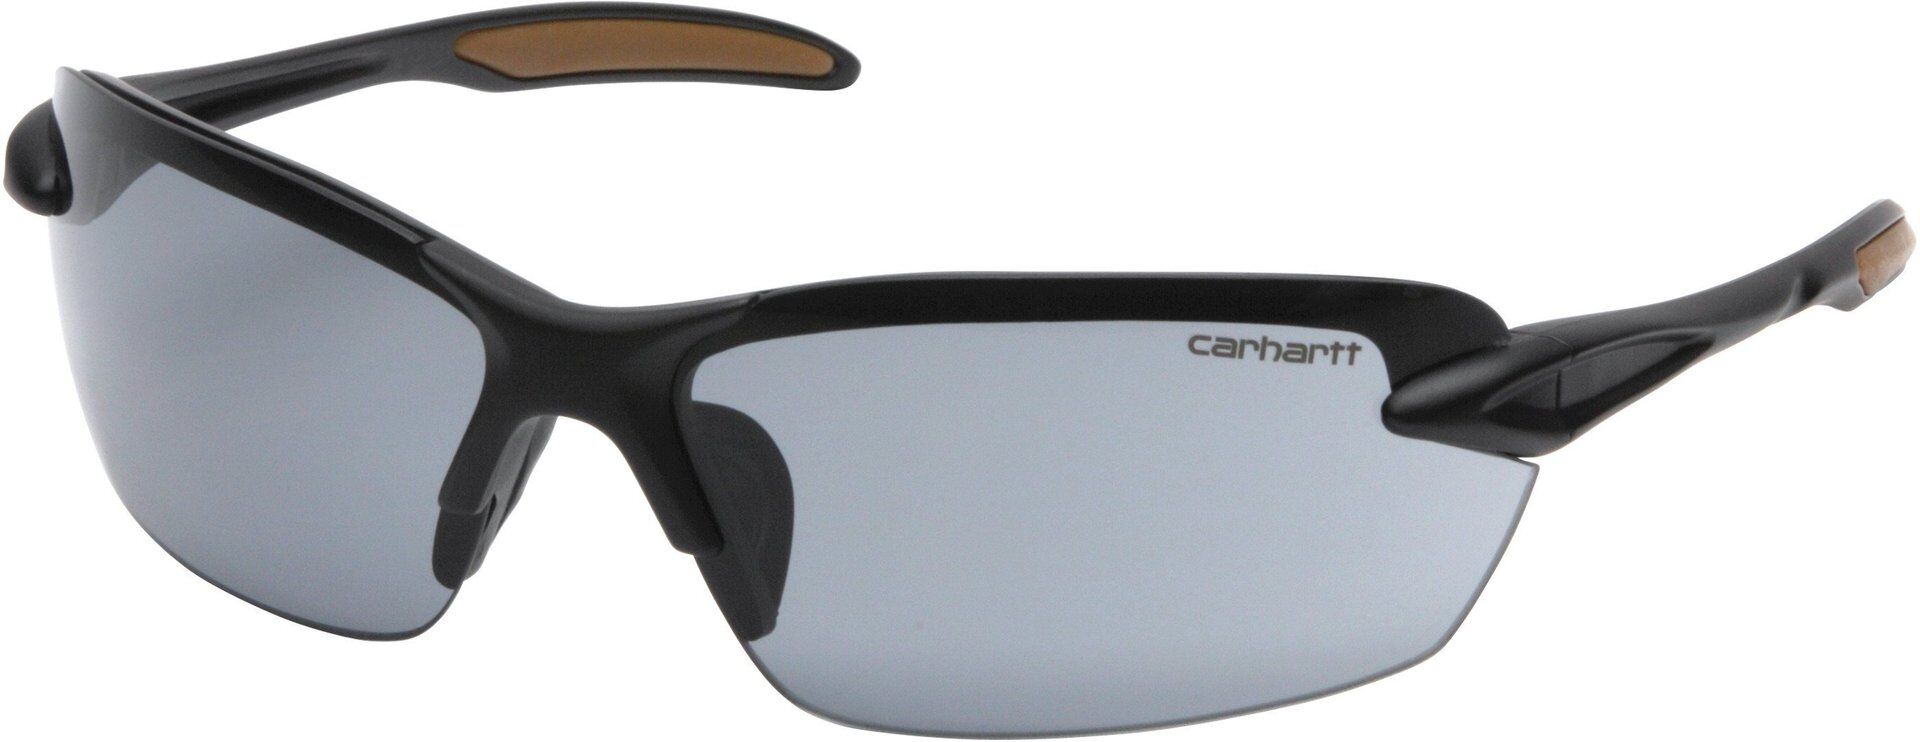 Carhartt Spokane Safety Glasses  - Grey